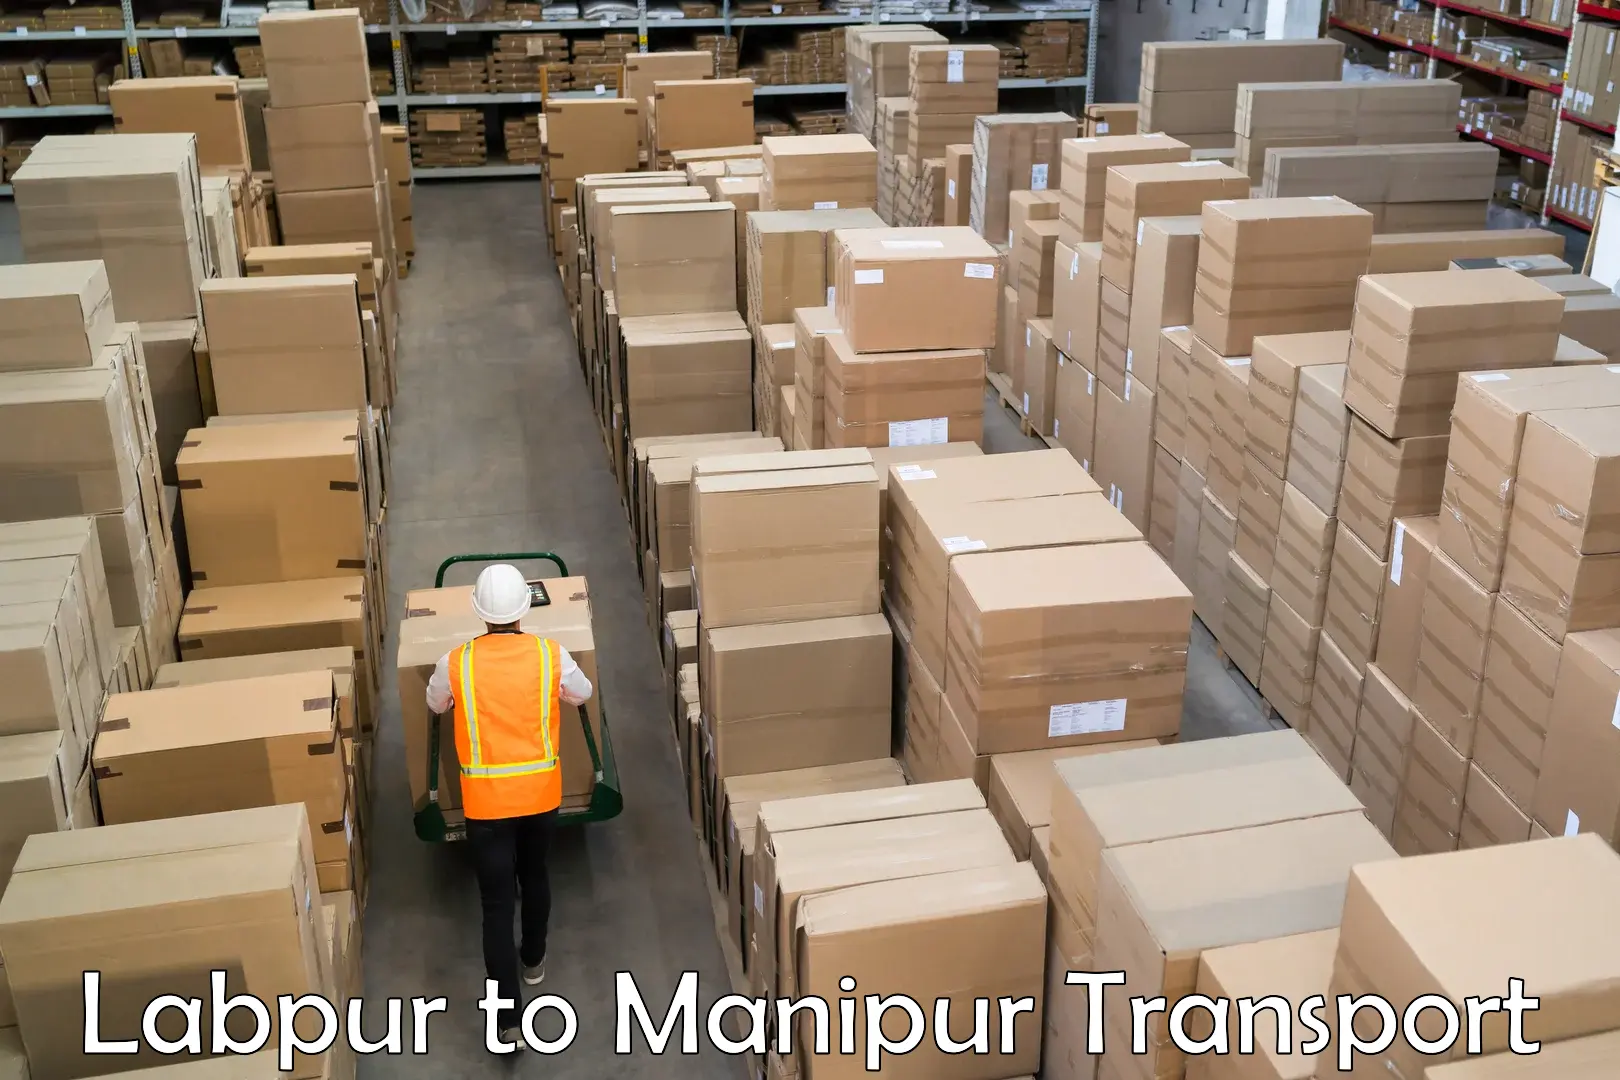 Air cargo transport services Labpur to Kaptipada